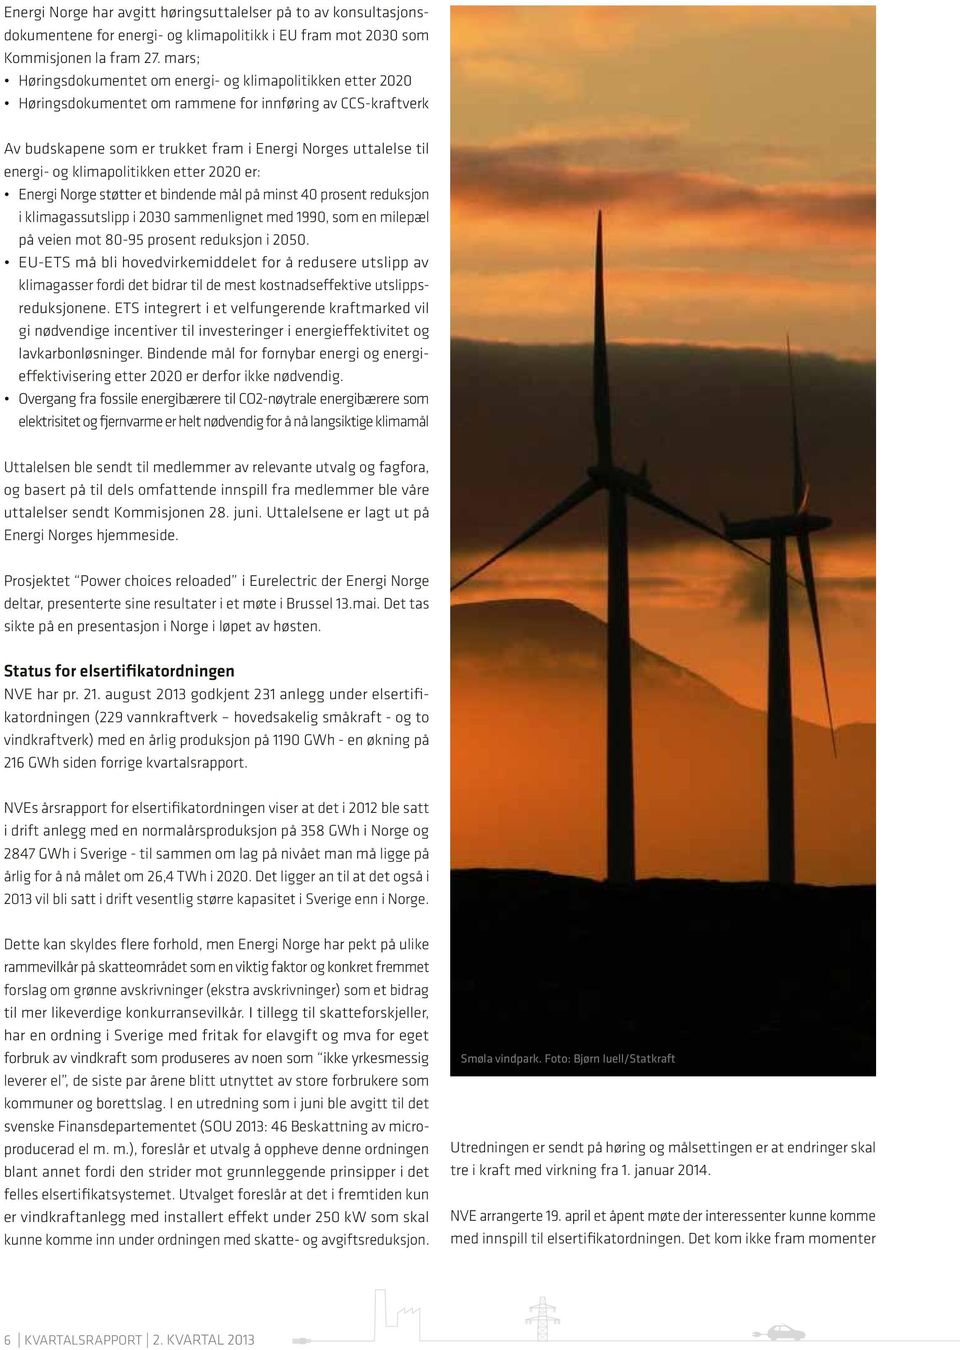 klimapolitikken etter 2020 er: Energi Norge støtter et bindende mål på minst 40 prosent reduksjon i klimagassutslipp i 2030 sammenlignet med 1990, som en milepæl på veien mot 80-95 prosent reduksjon